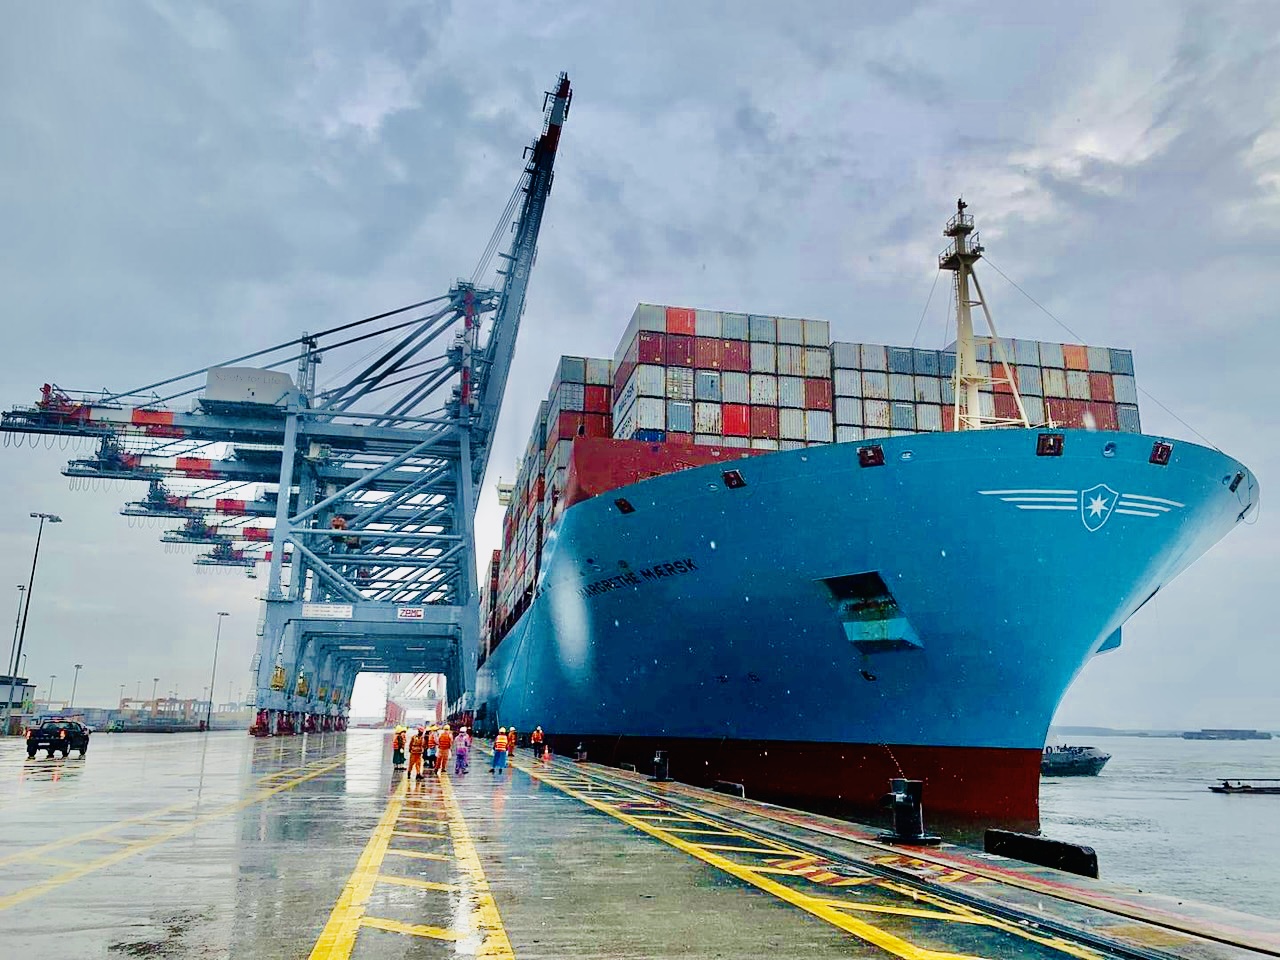 Siêu tàu container Margrethe Maersk trọng tải 214.121 DWT cập cảng CMIT tháng 10/2020.